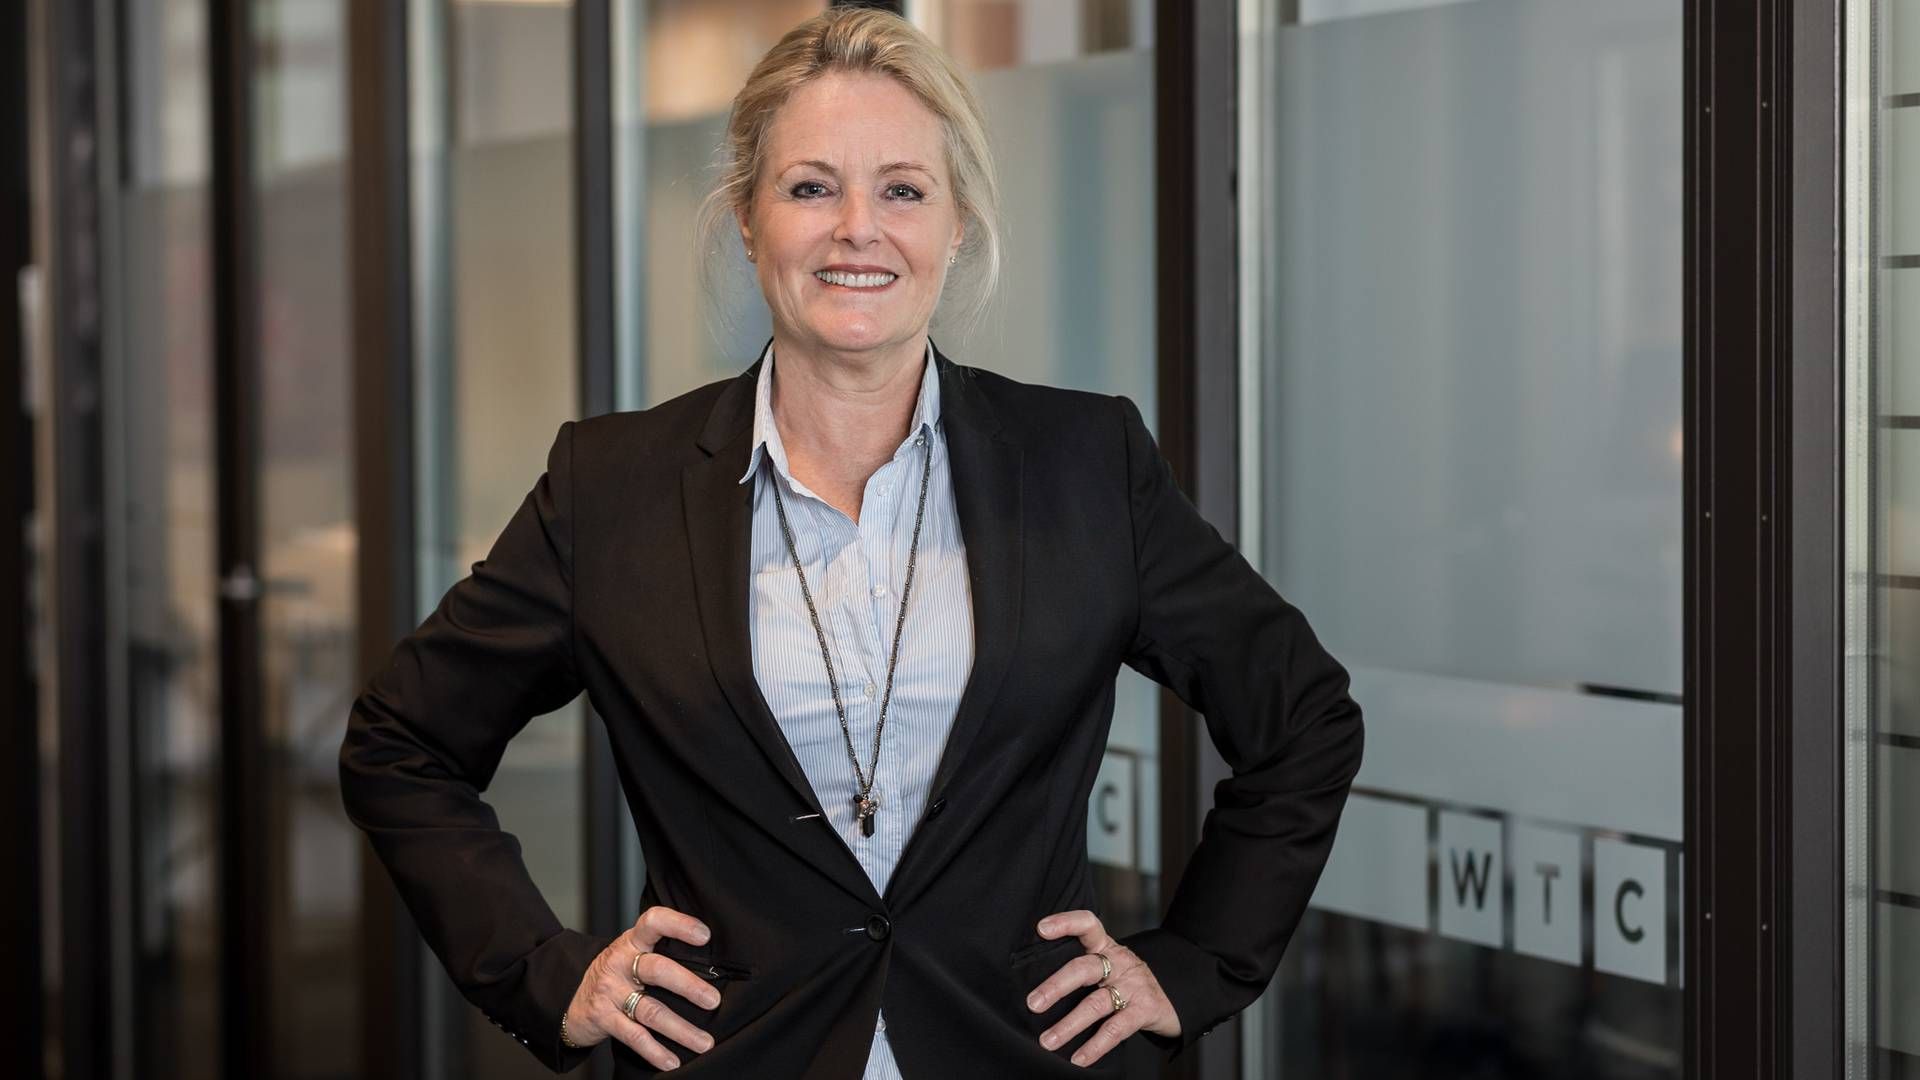 Helle Jørgsholm, advokat og partner i WTC Advokaterne. | Foto: PR WTC